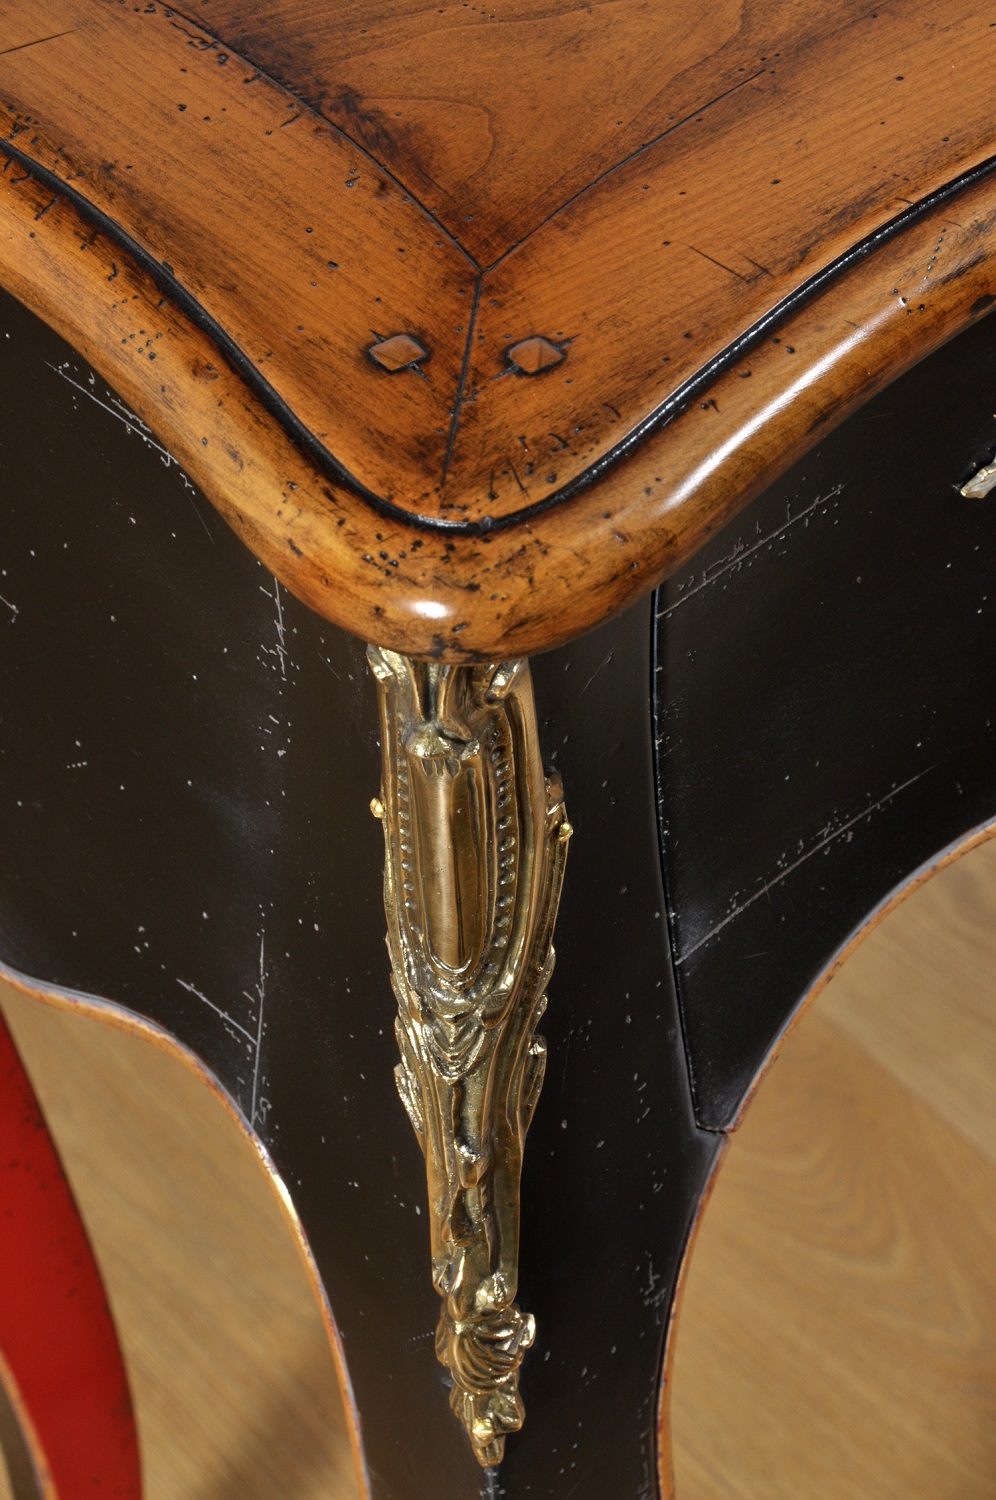 consolle d’epoca in stile veneziano barocco Luigi XV forme mosse e bombate 4 gambe alte sagomate laccatura bicolore rosso e nera bronzi cesellati a mano essenza di ciliegio massello